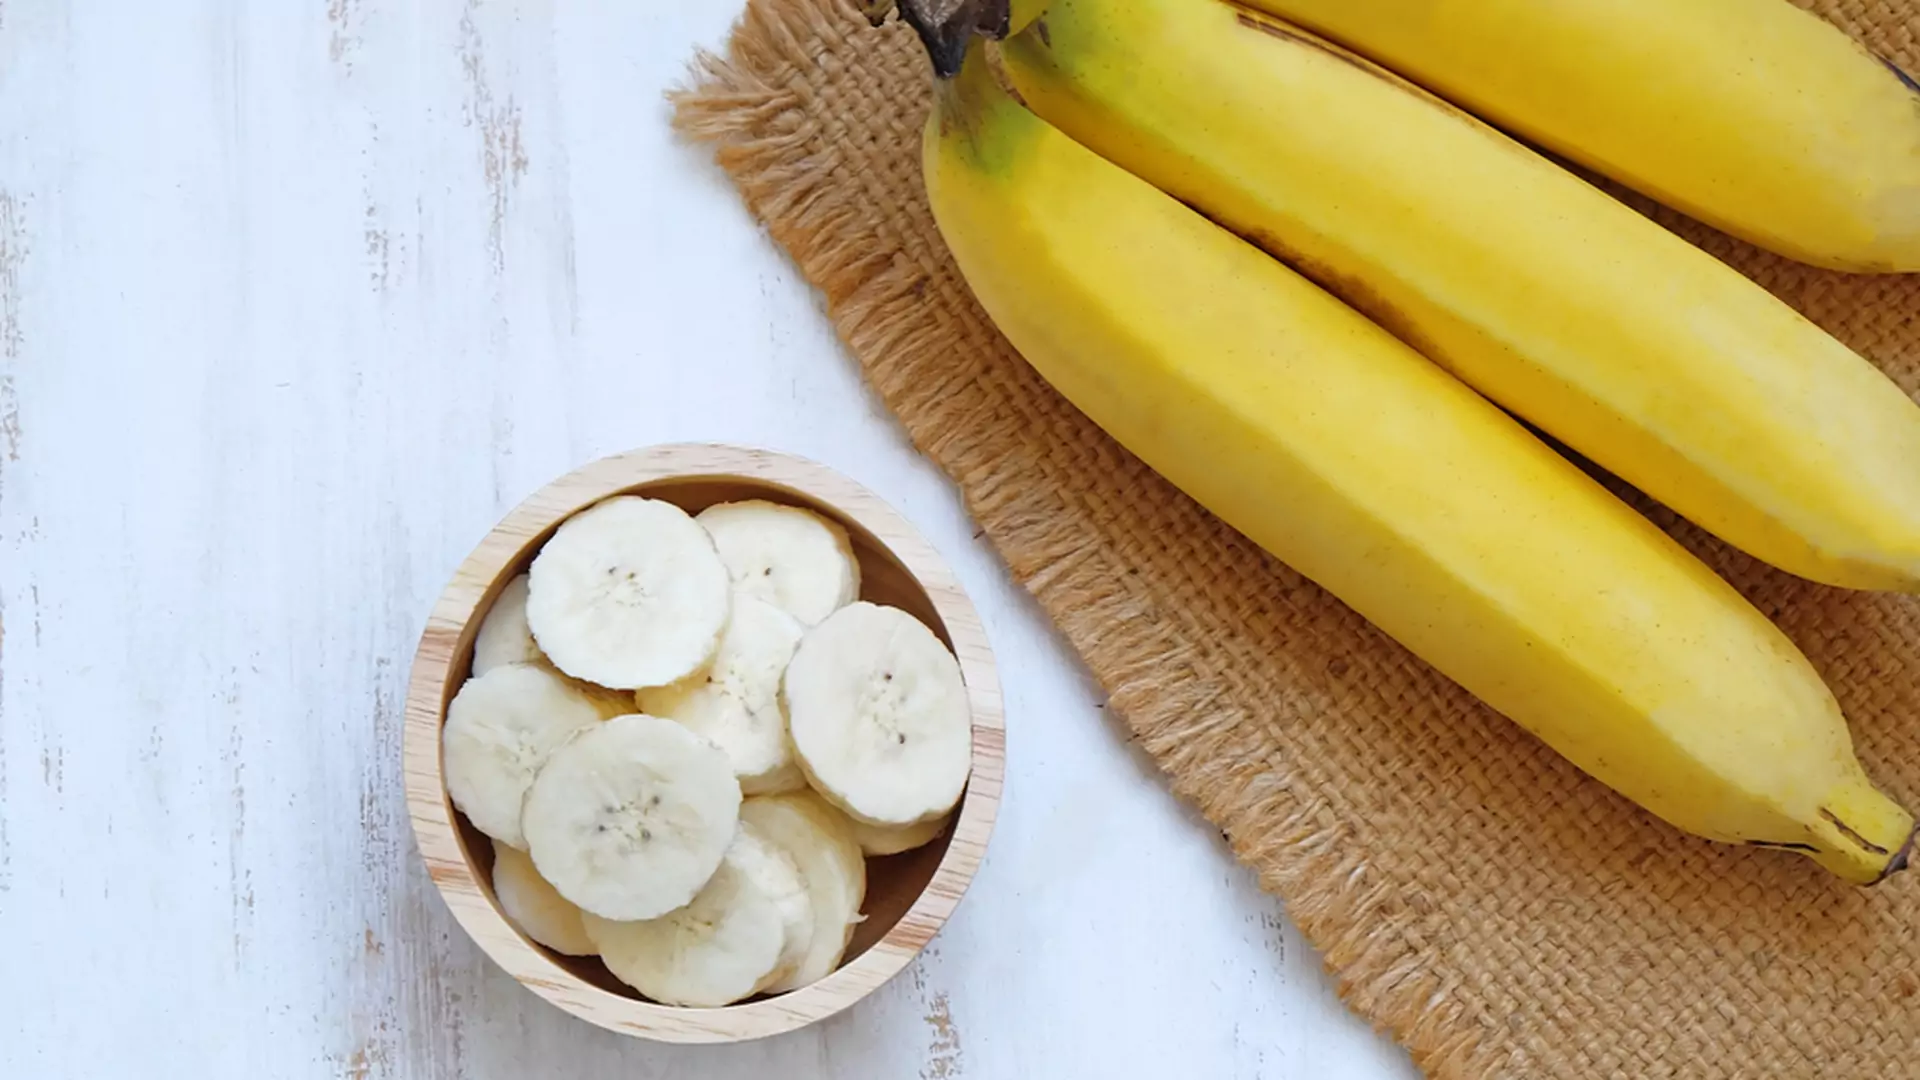 Ciemne i cętkowane banany są bardzo zdrowe. Właściwości owocu zmieniają się wraz z kolorem skórki